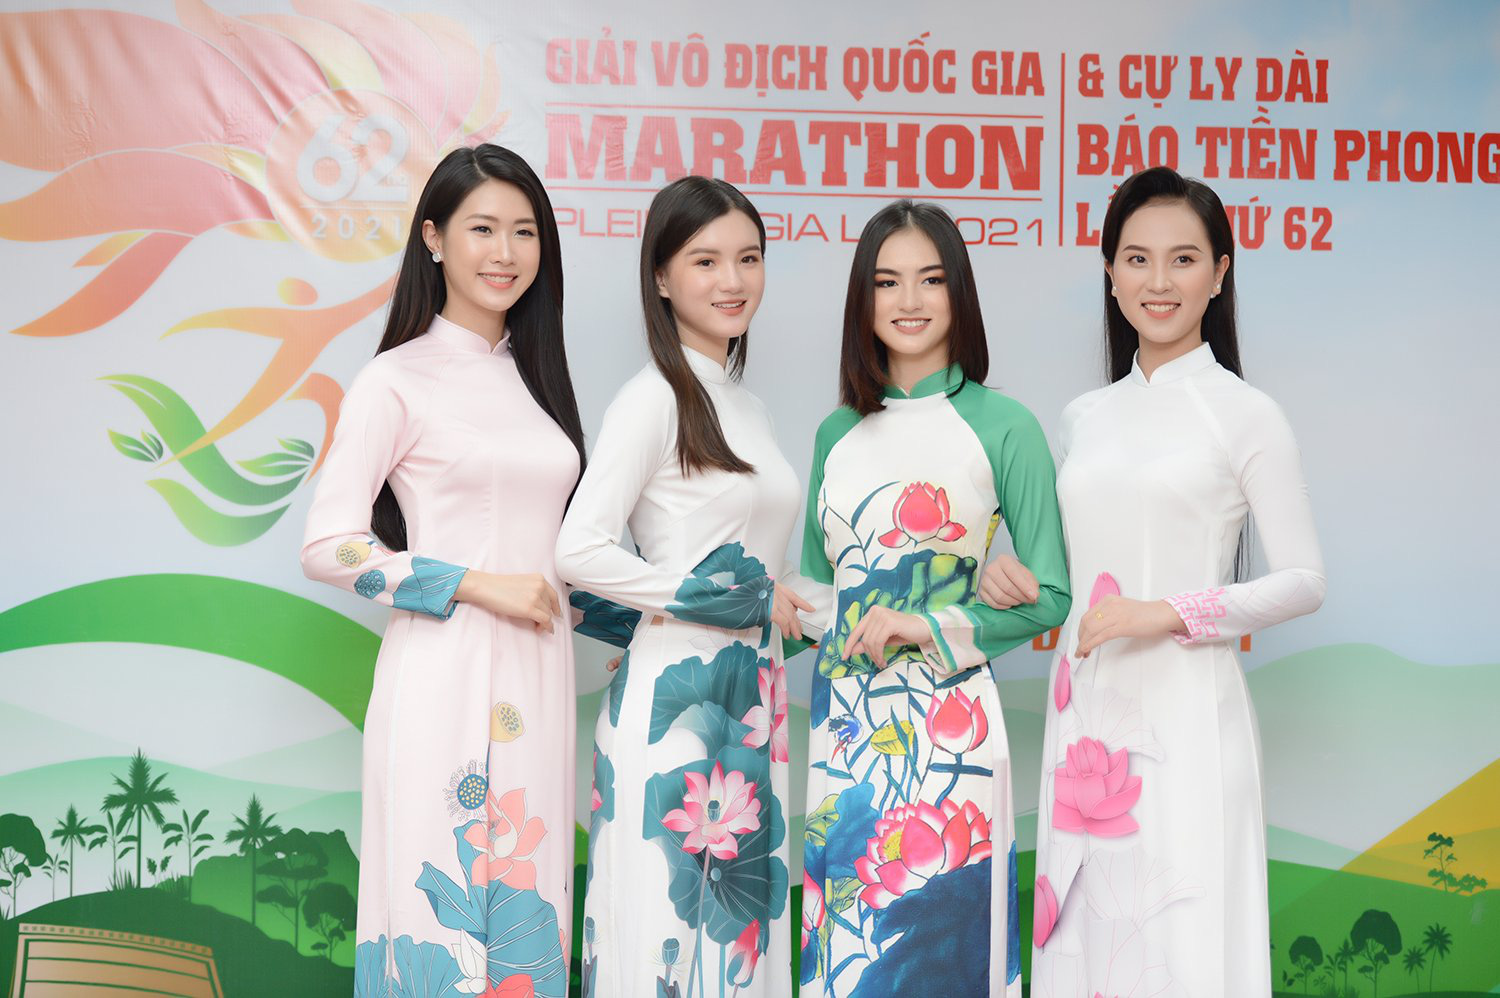 Hoa hậu Đỗ Mỹ Linh đẹp giản dị dự giải Marathon báo Tiền Phong - Ảnh 12.